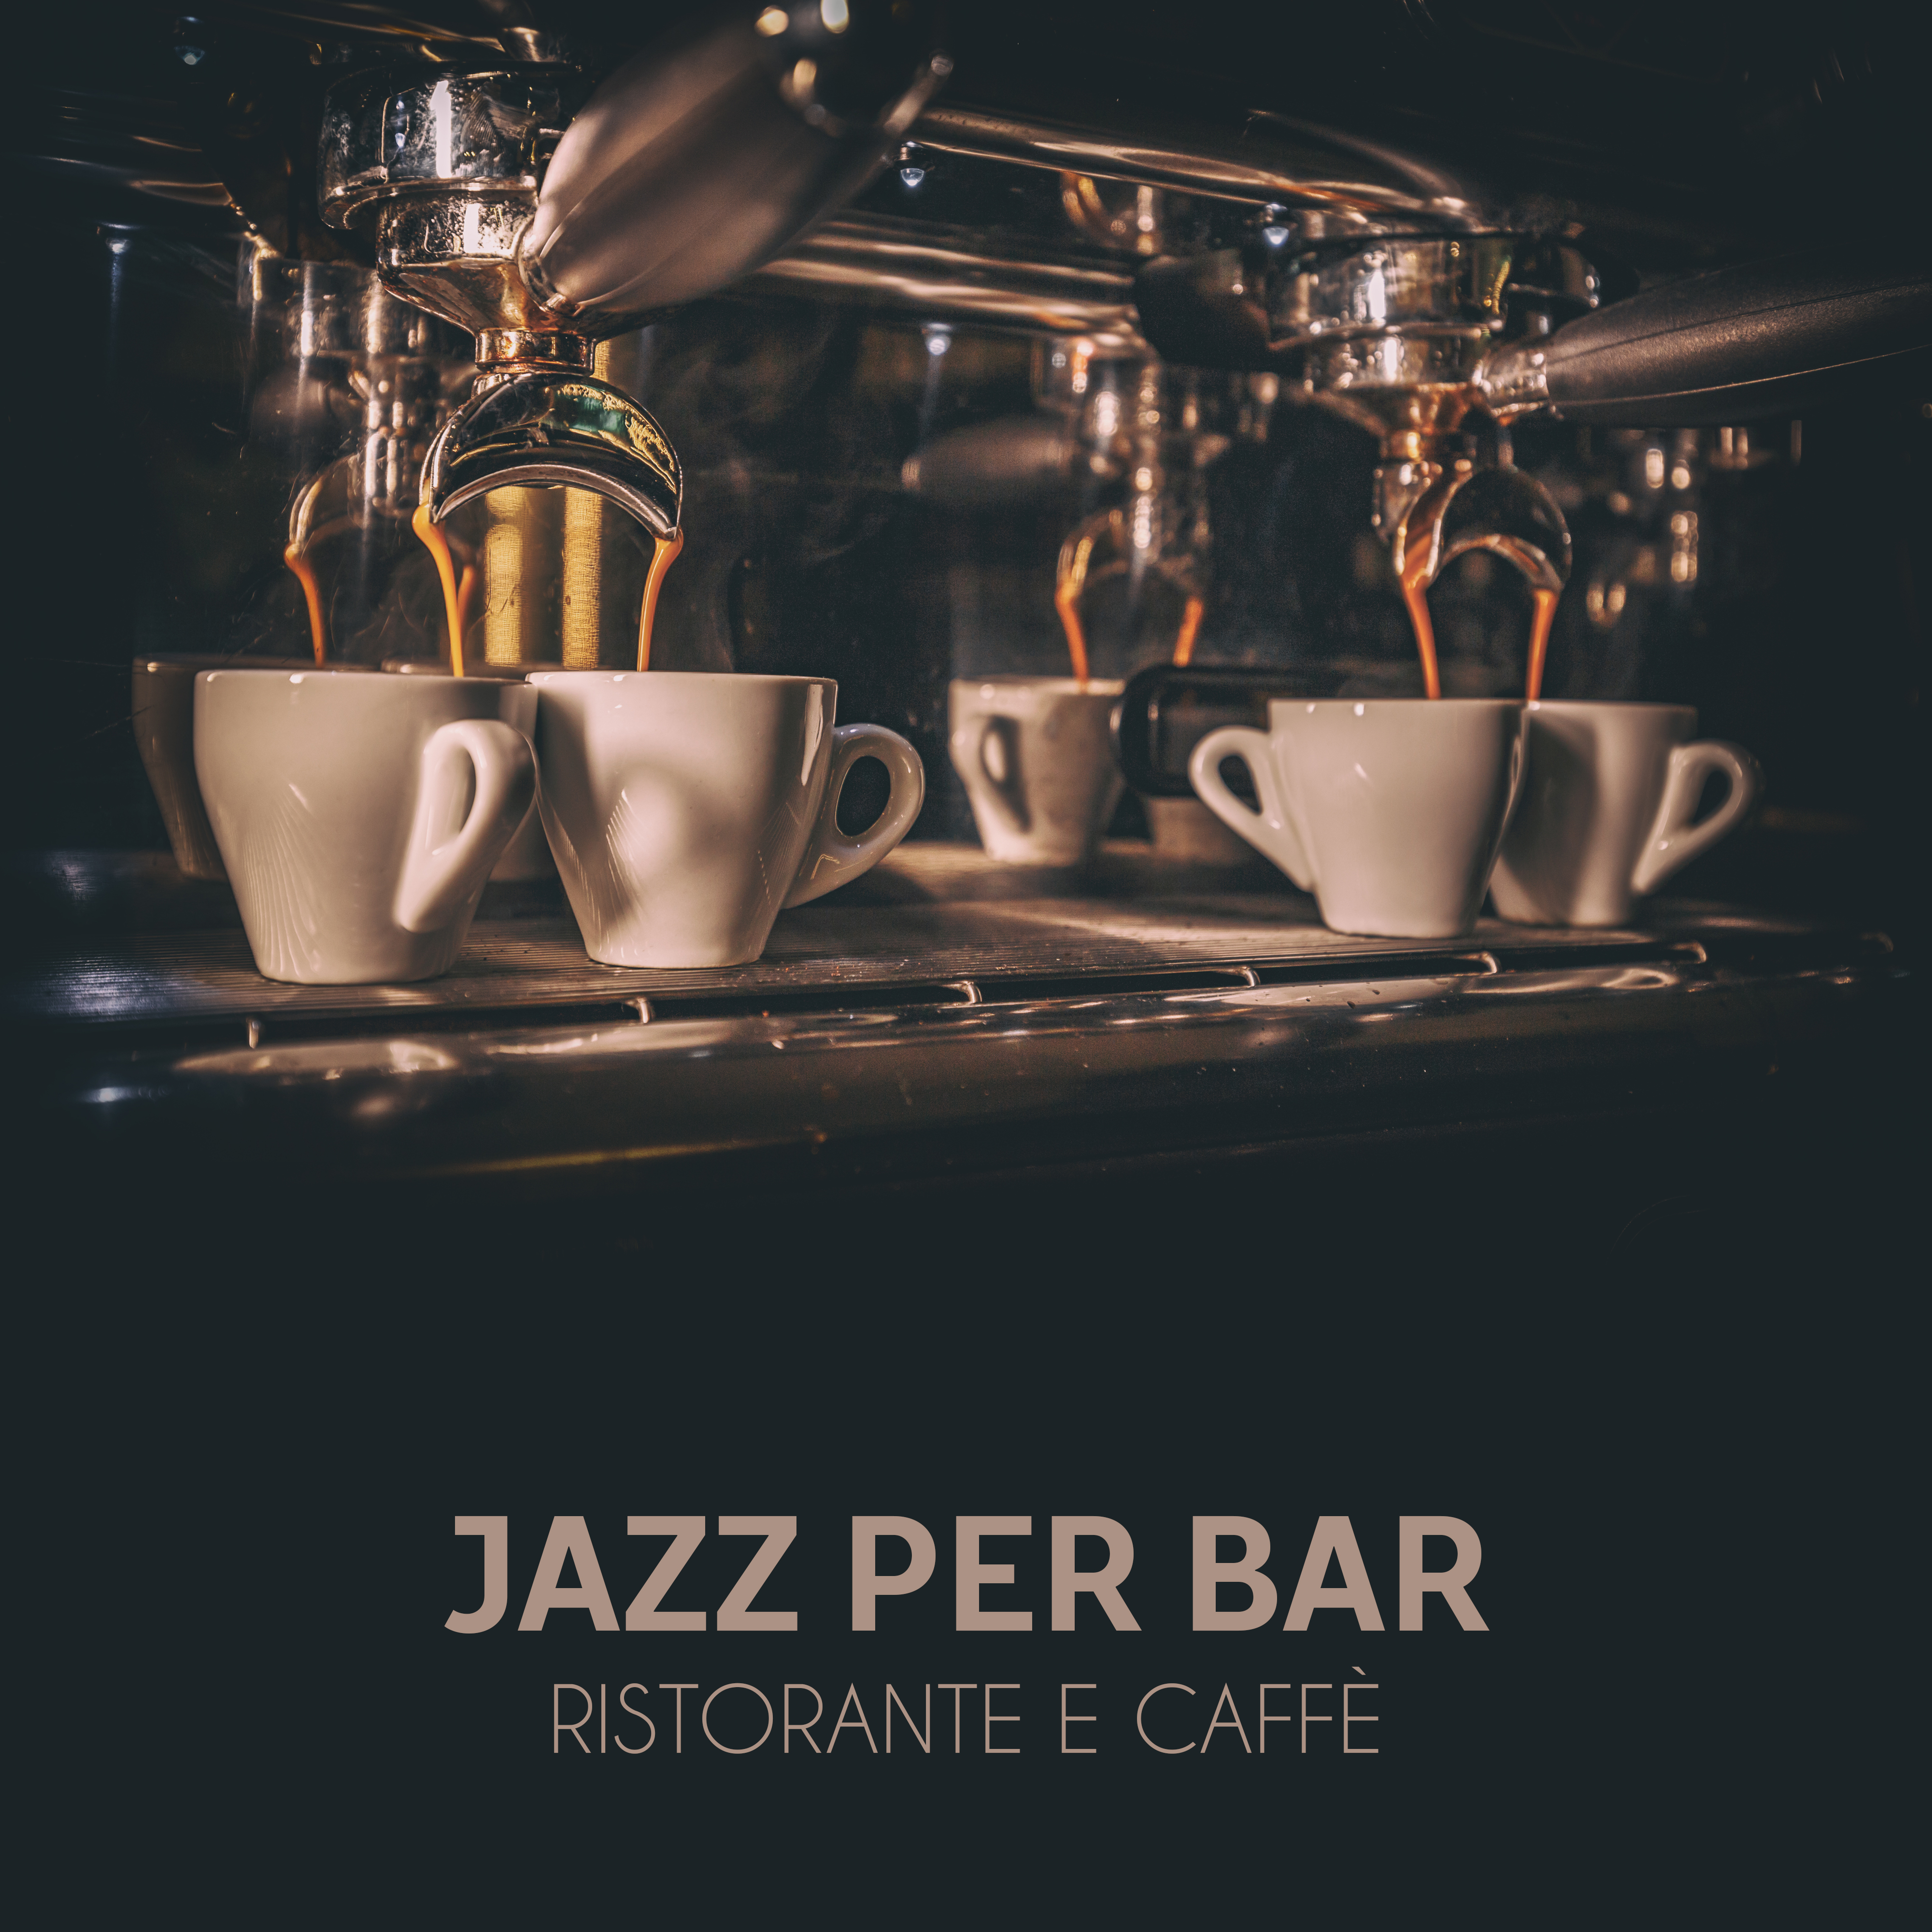 Jazz per bar ristorante e caffè